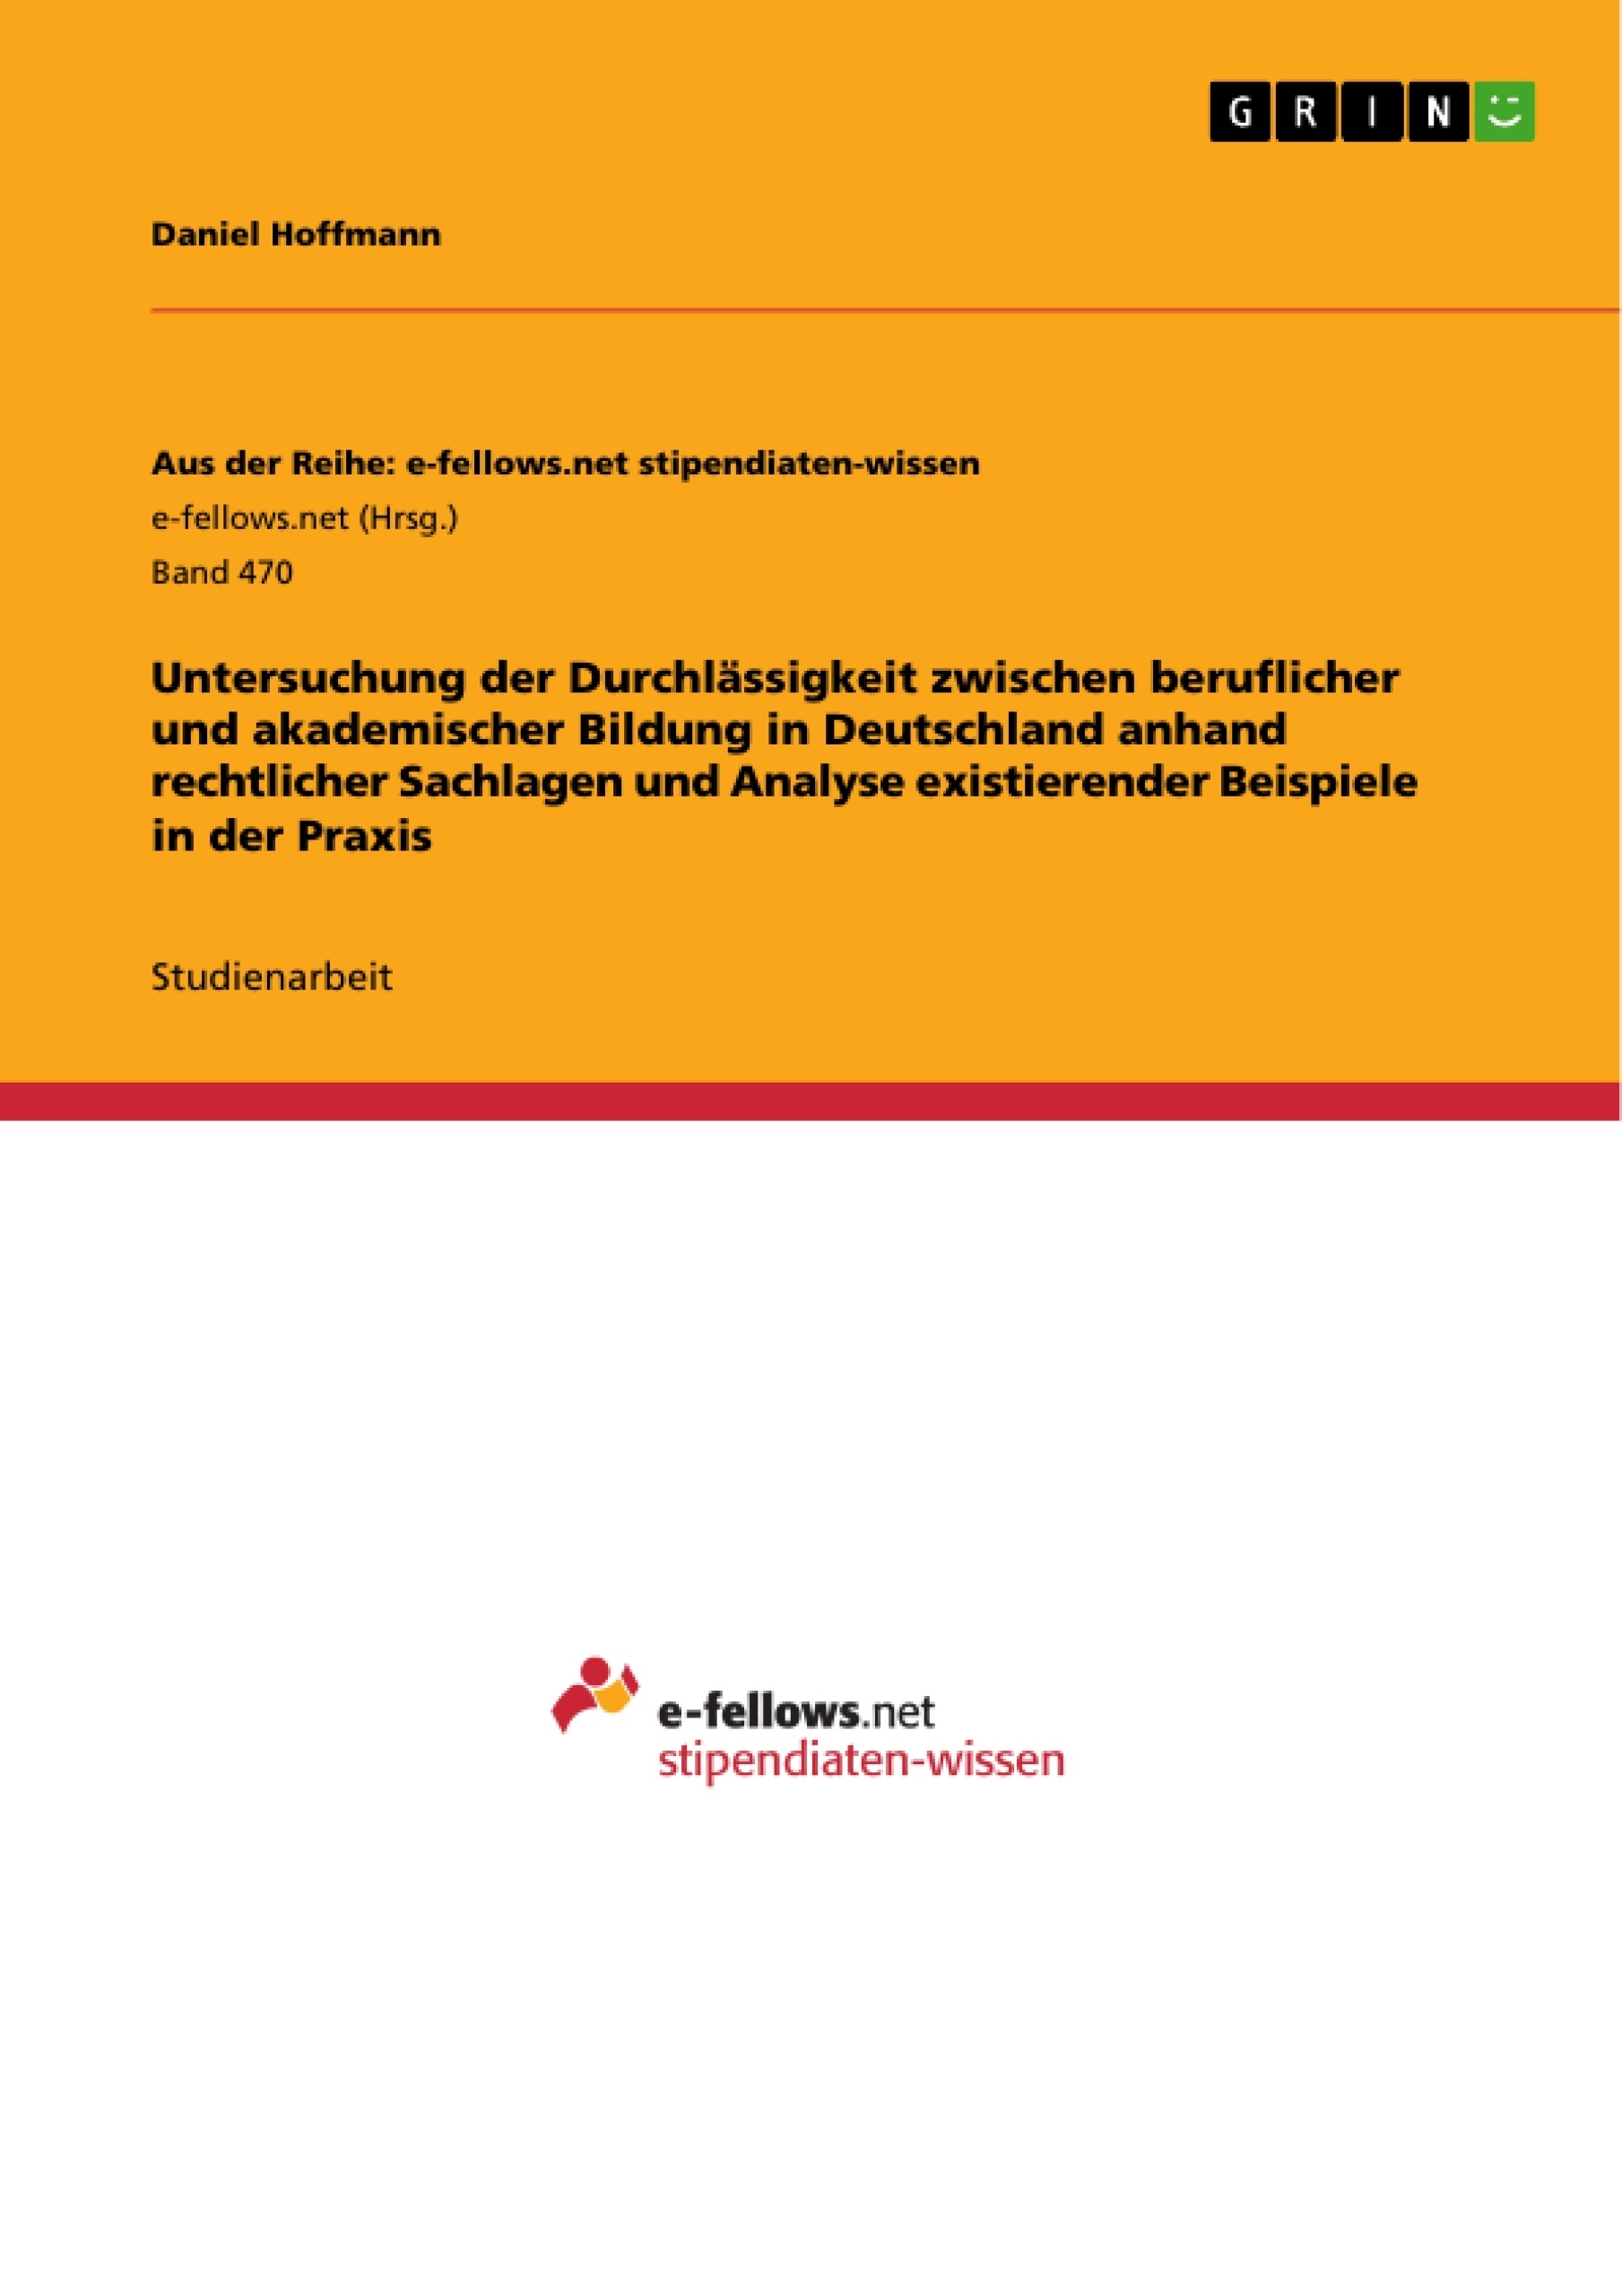 Título: Untersuchung der Durchlässigkeit zwischen beruflicher und akademischer Bildung in Deutschland anhand rechtlicher Sachlagen und Analyse existierender Beispiele in der Praxis